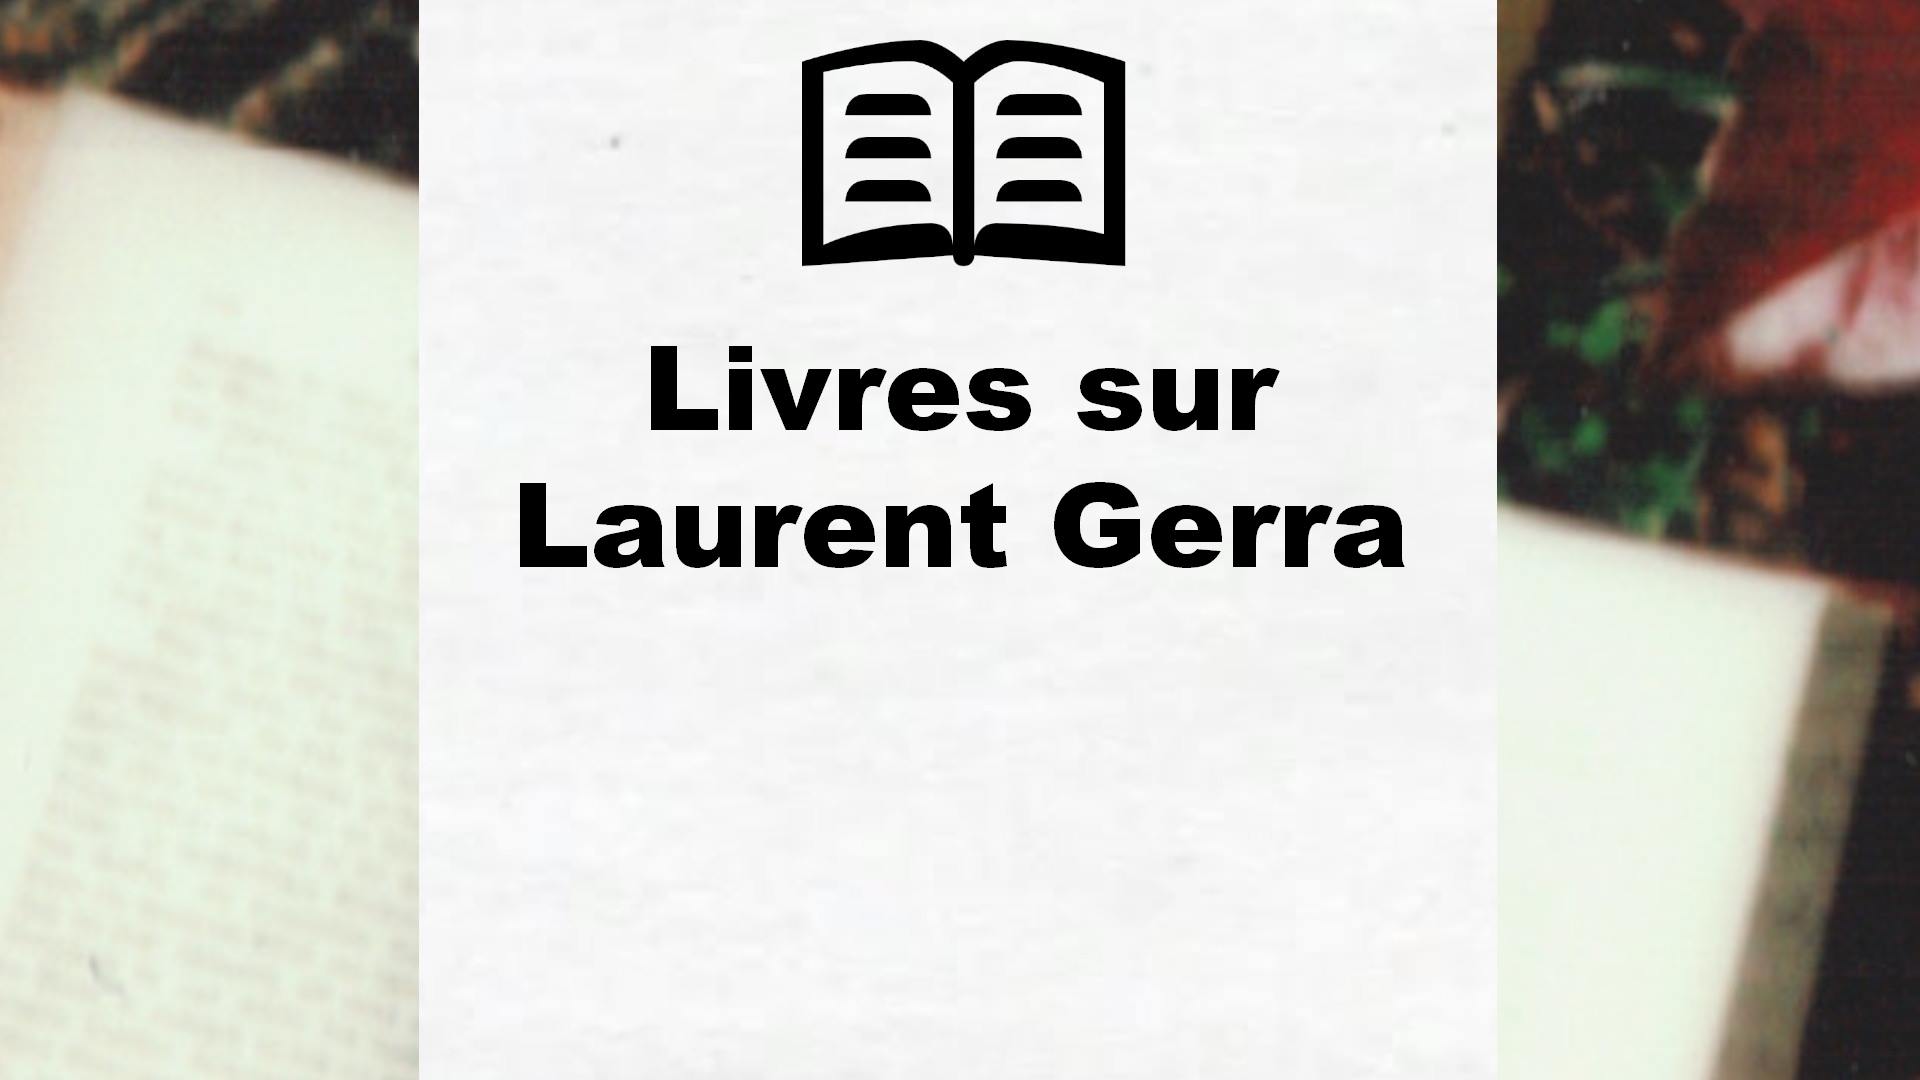 Livres sur Laurent Gerra